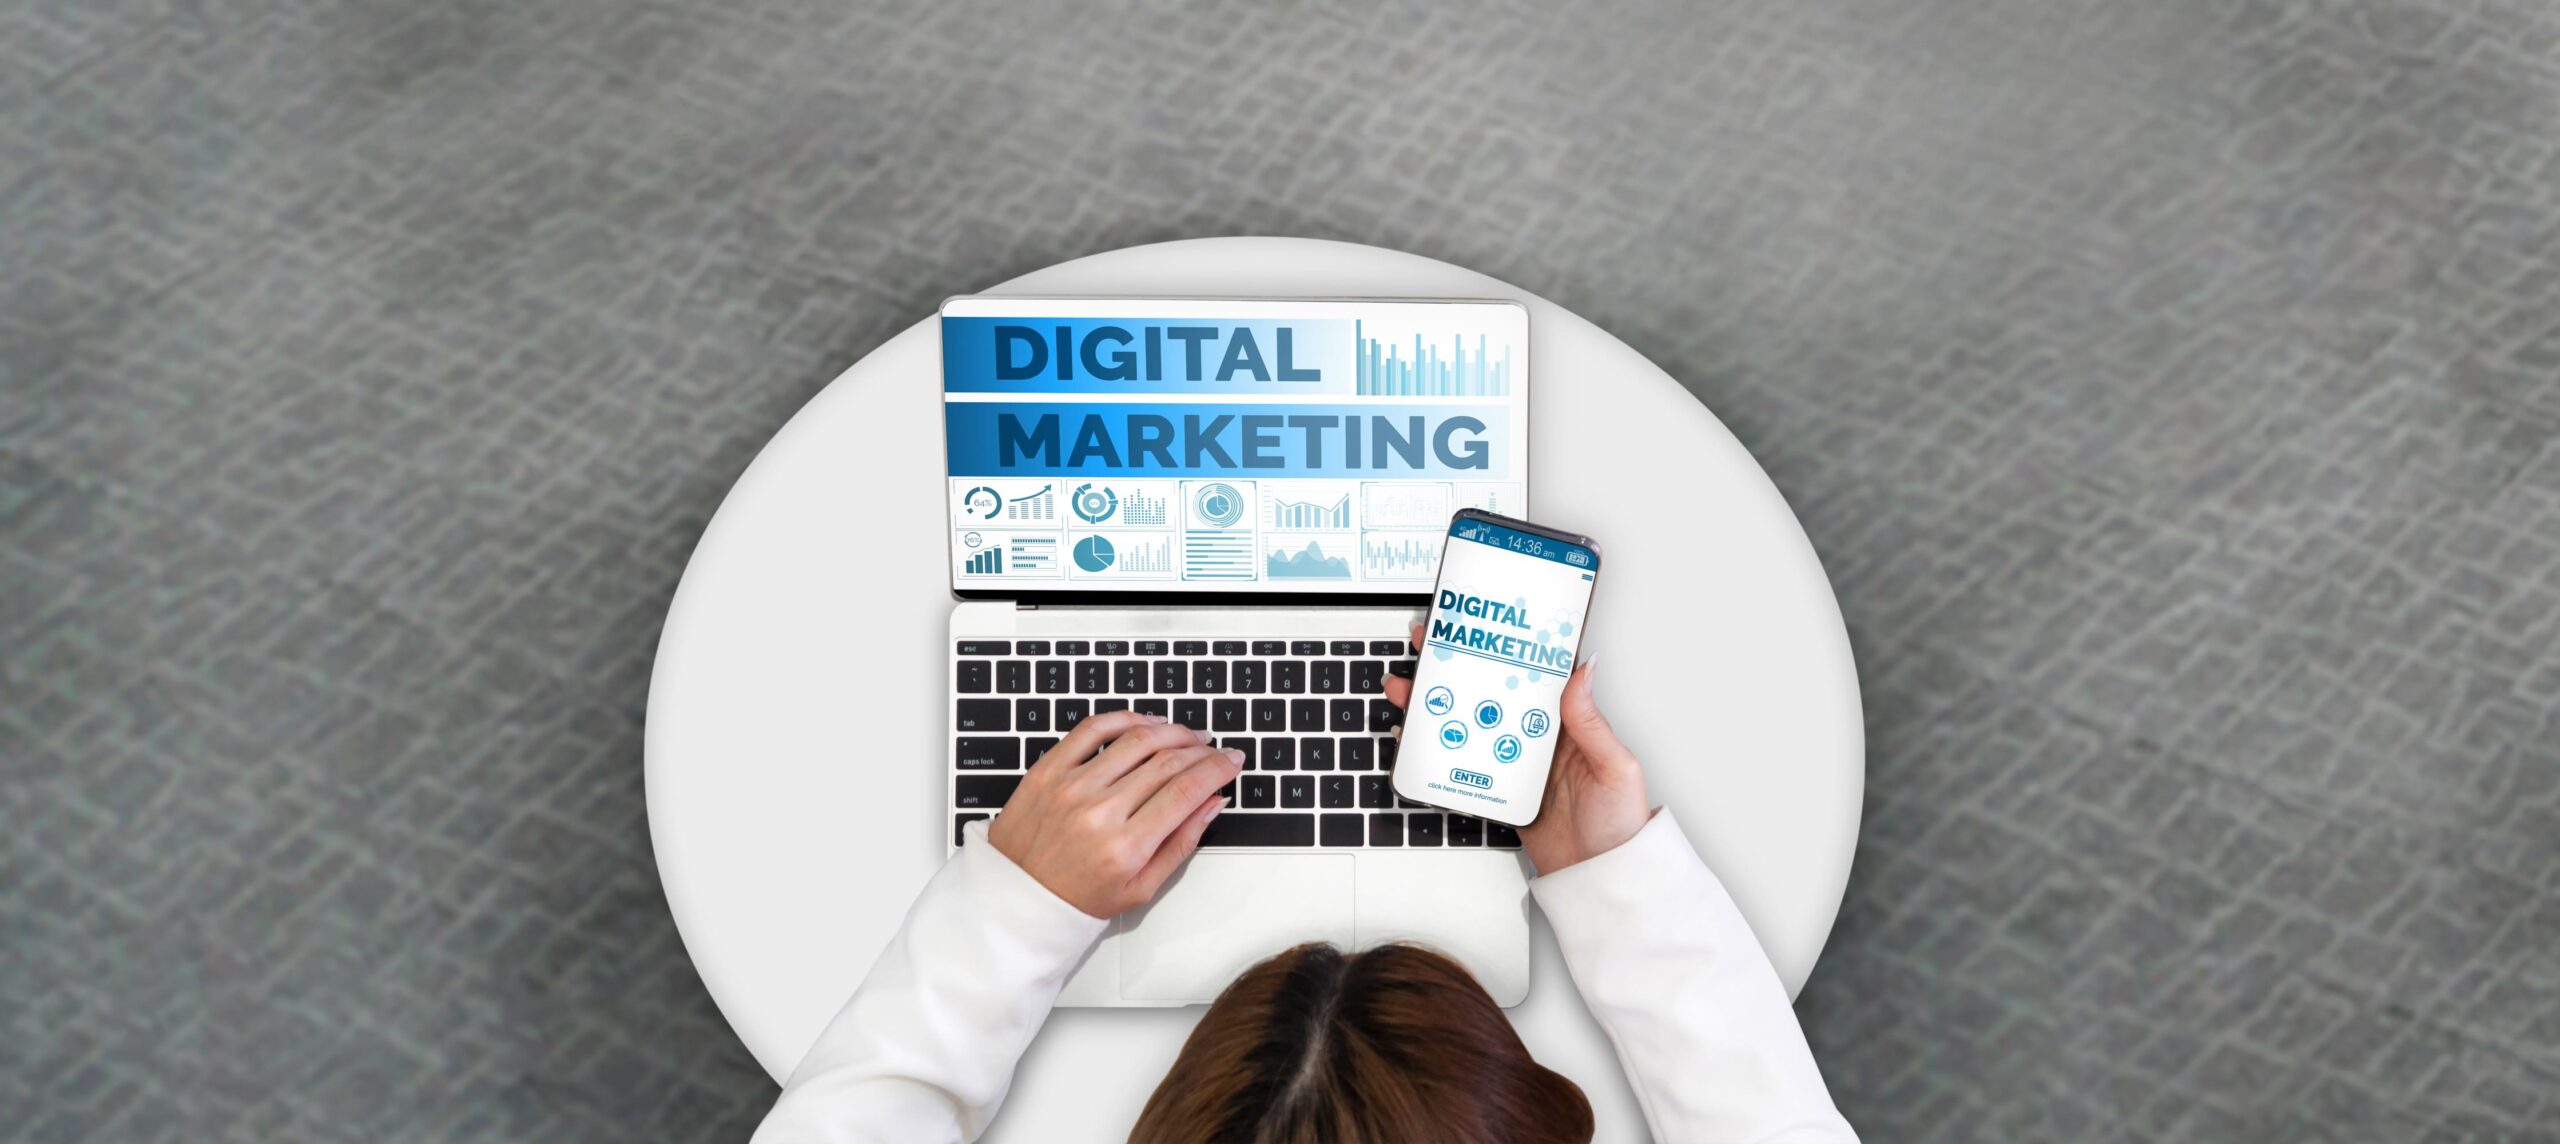 Definição e Conceitos do Marketing Digital